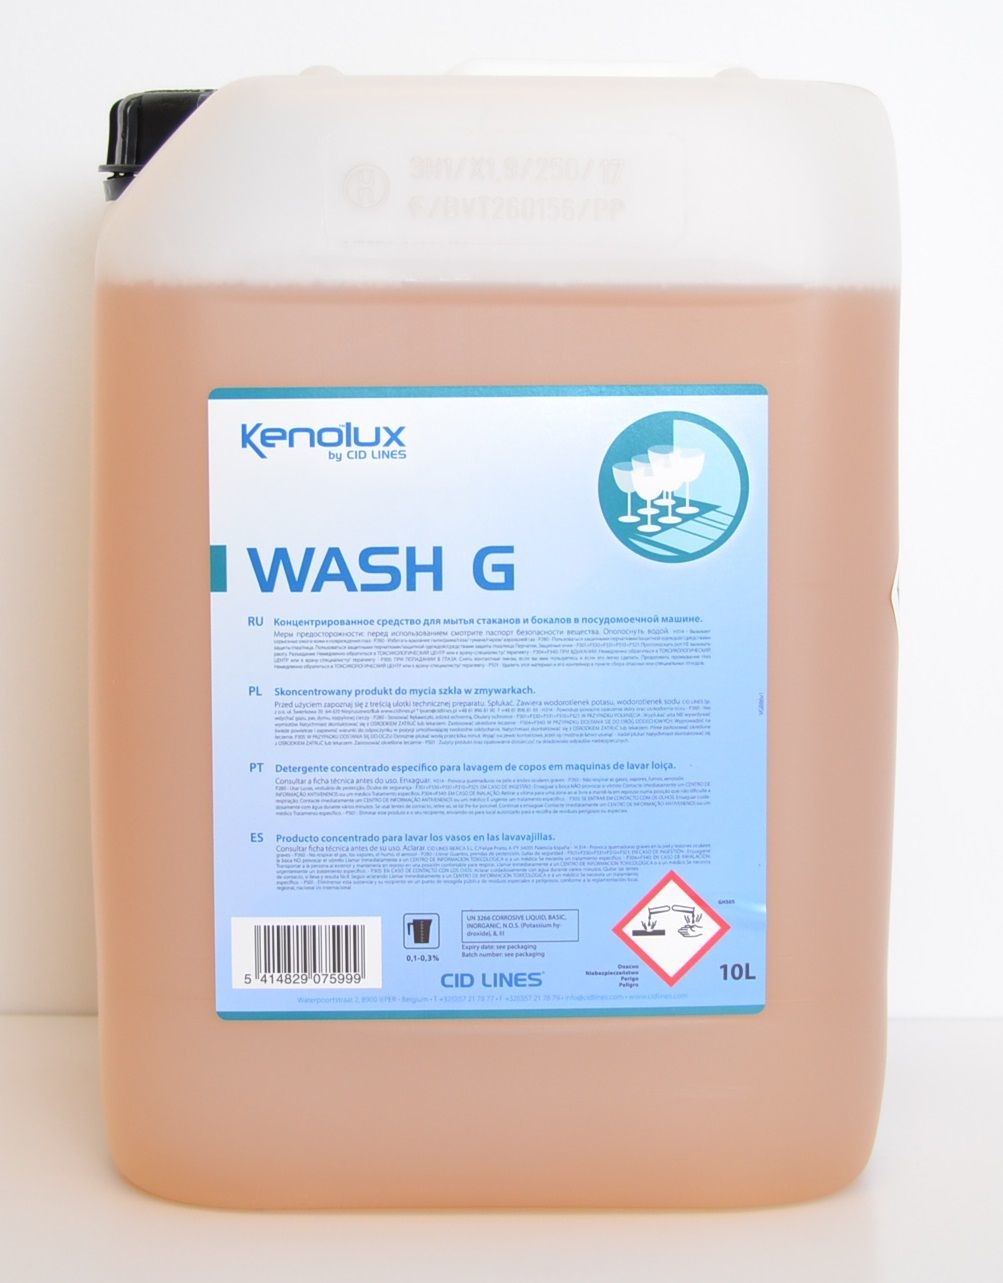 Kenolux Wash G 10L Produit de nettoyage pour lave-vaisselle Cid Lines